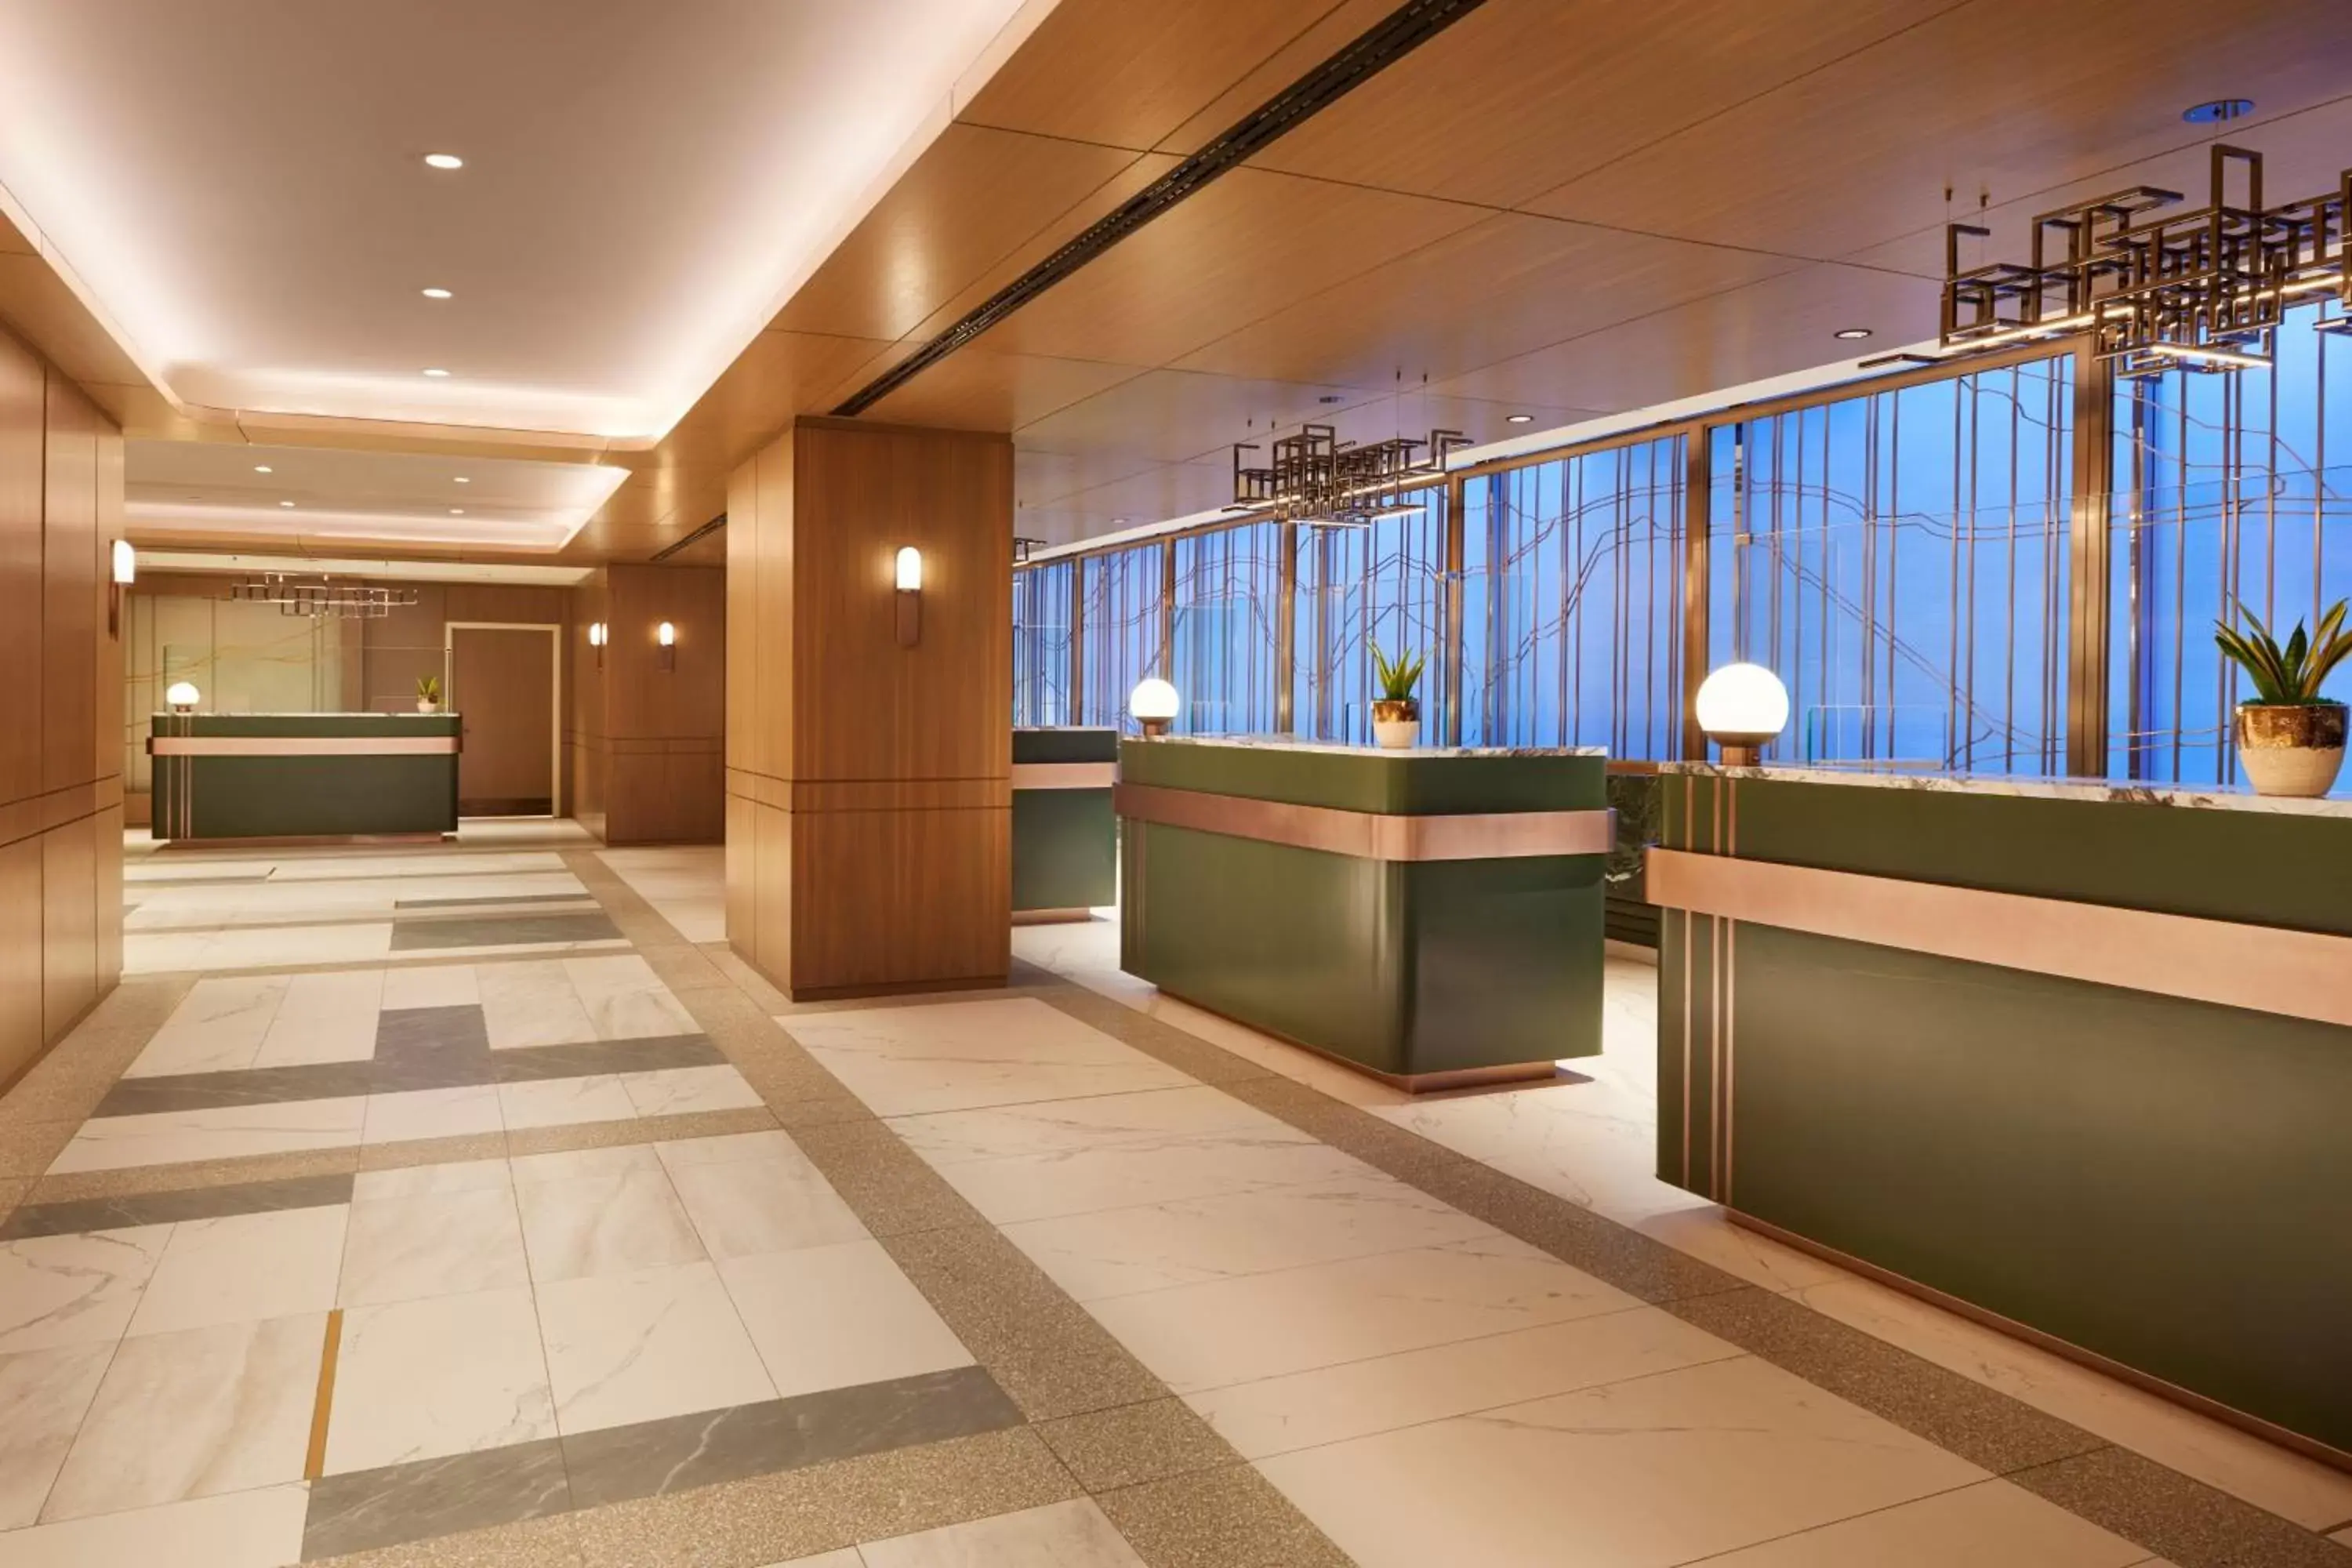 Lobby or reception, Lobby/Reception in Sheraton Centre Toronto Hotel